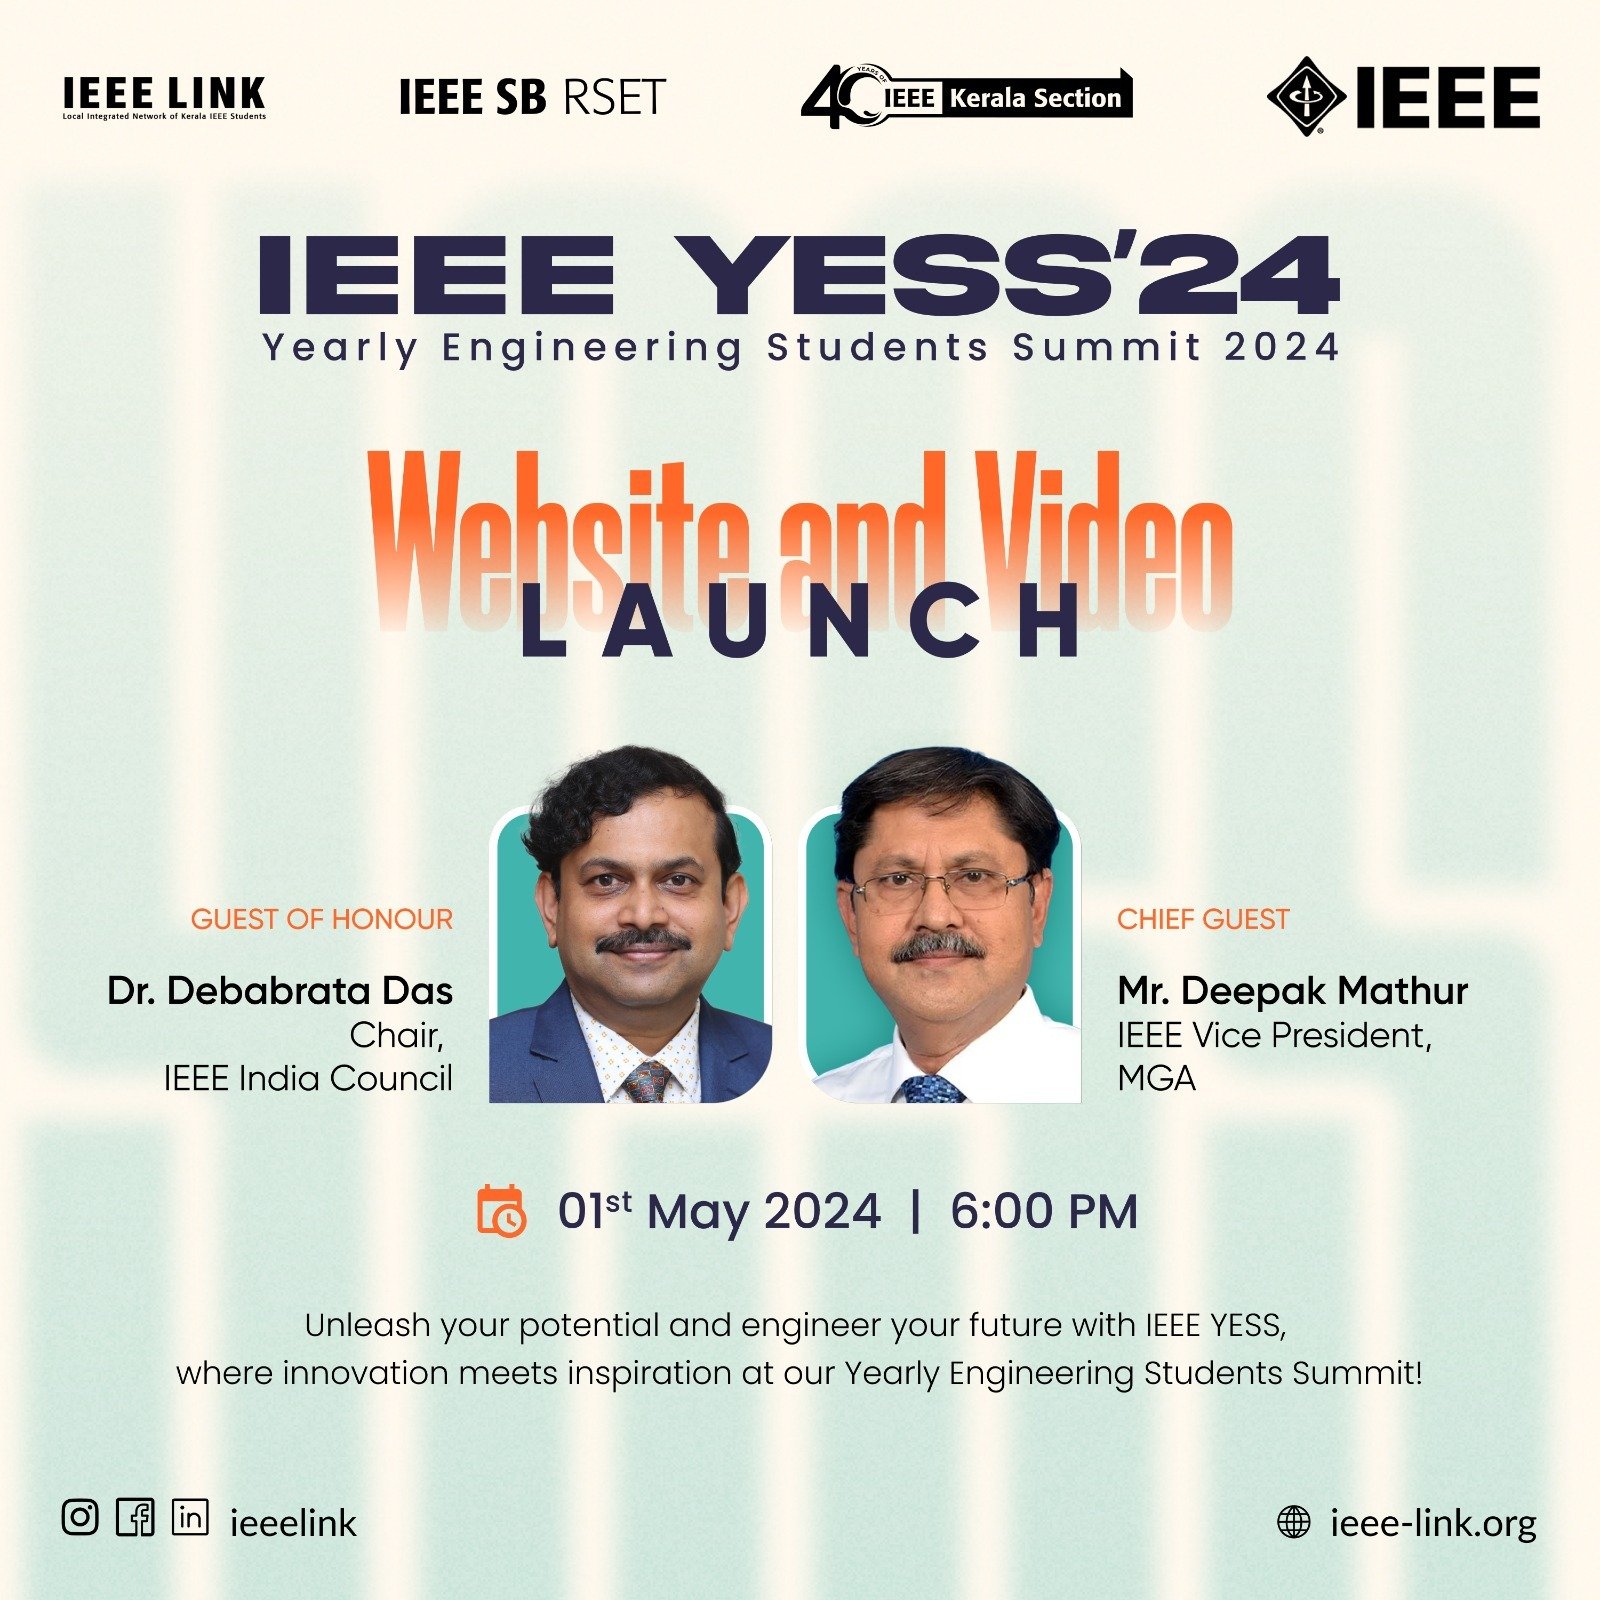 IEEE YESS’24